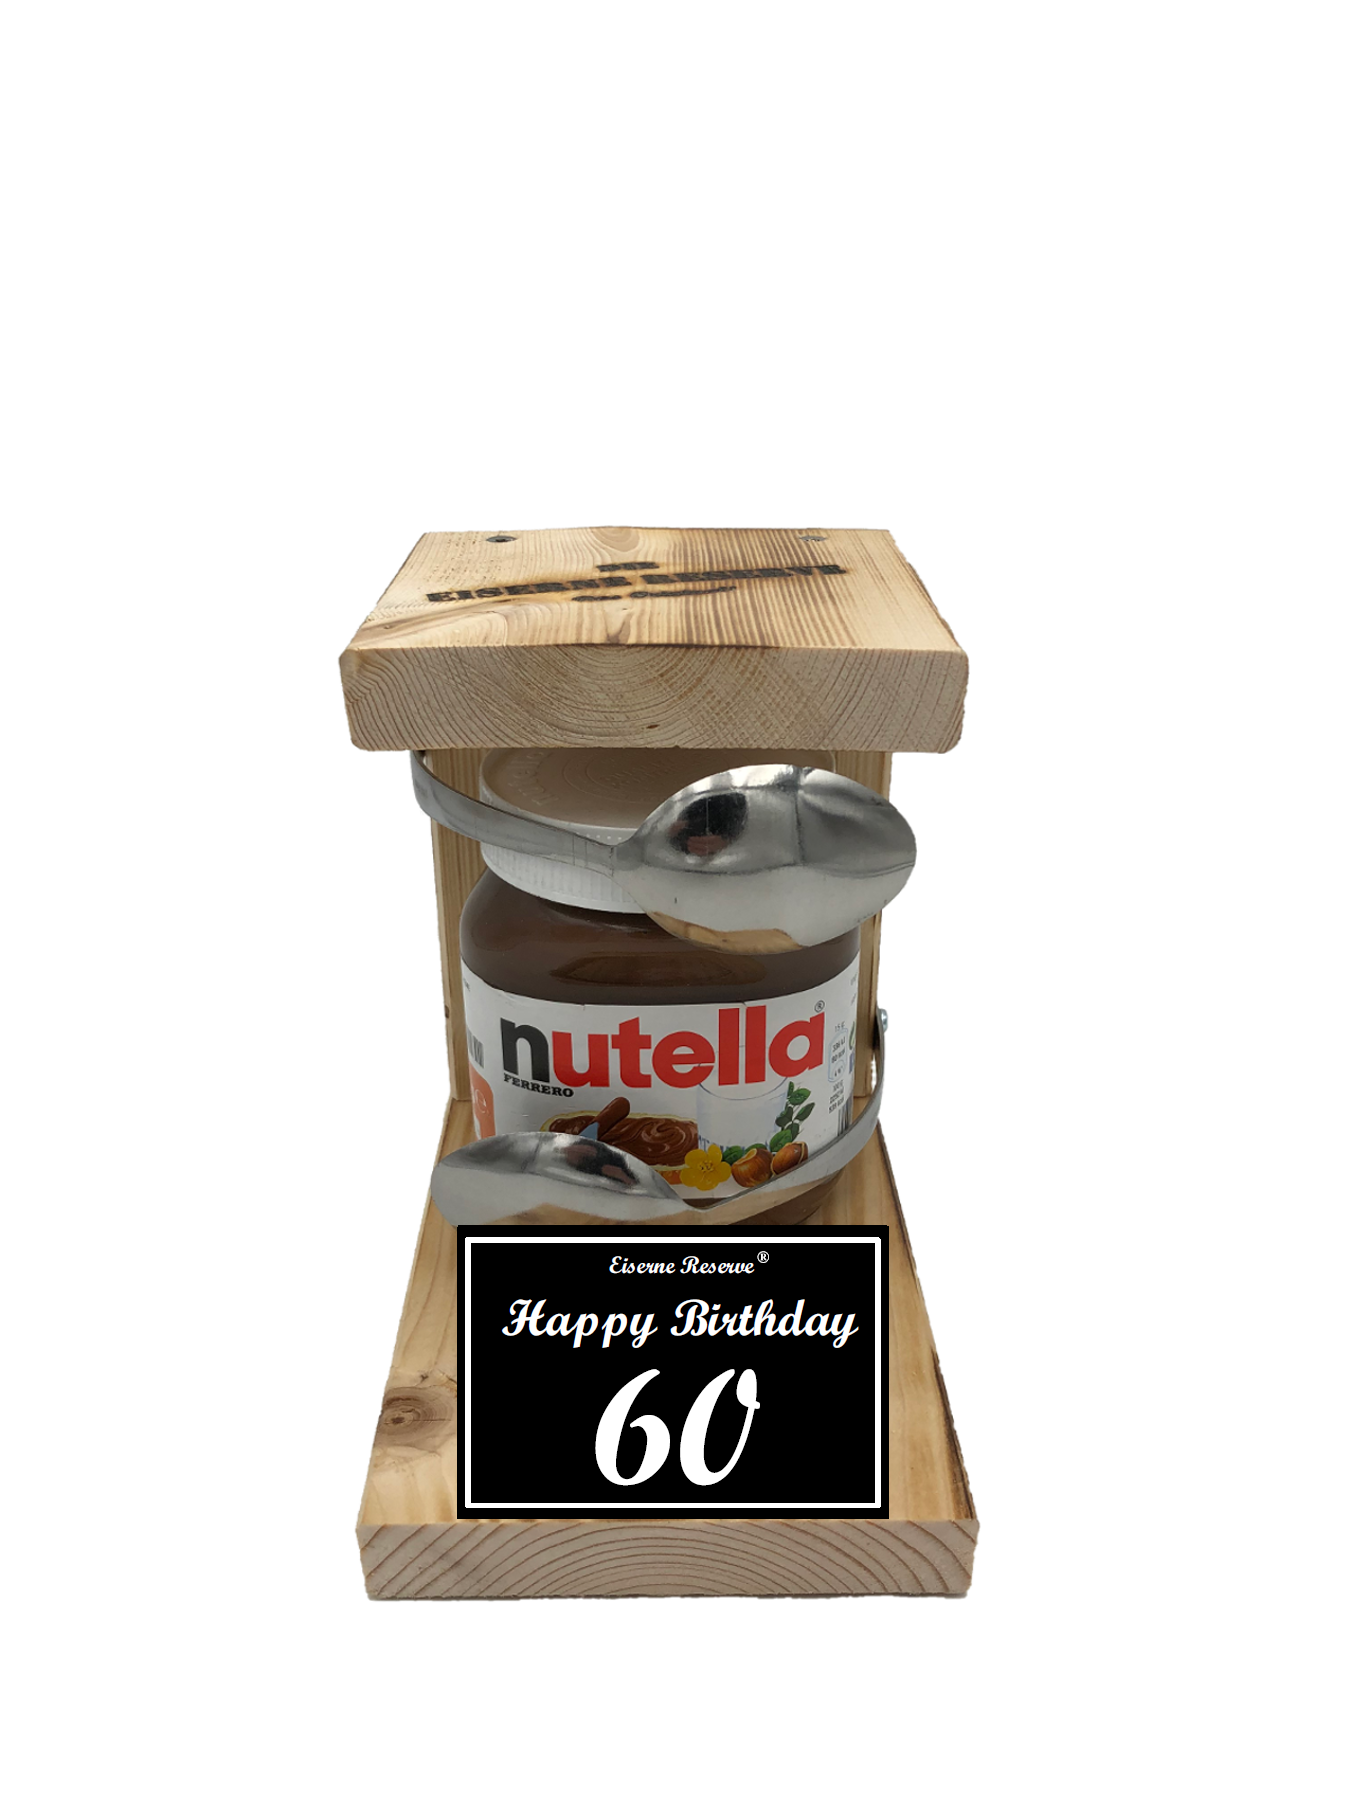 Geburtstag 60 - Eiserne Reserve Löffel Nutella - Geburtstag - Nutella Geschenk